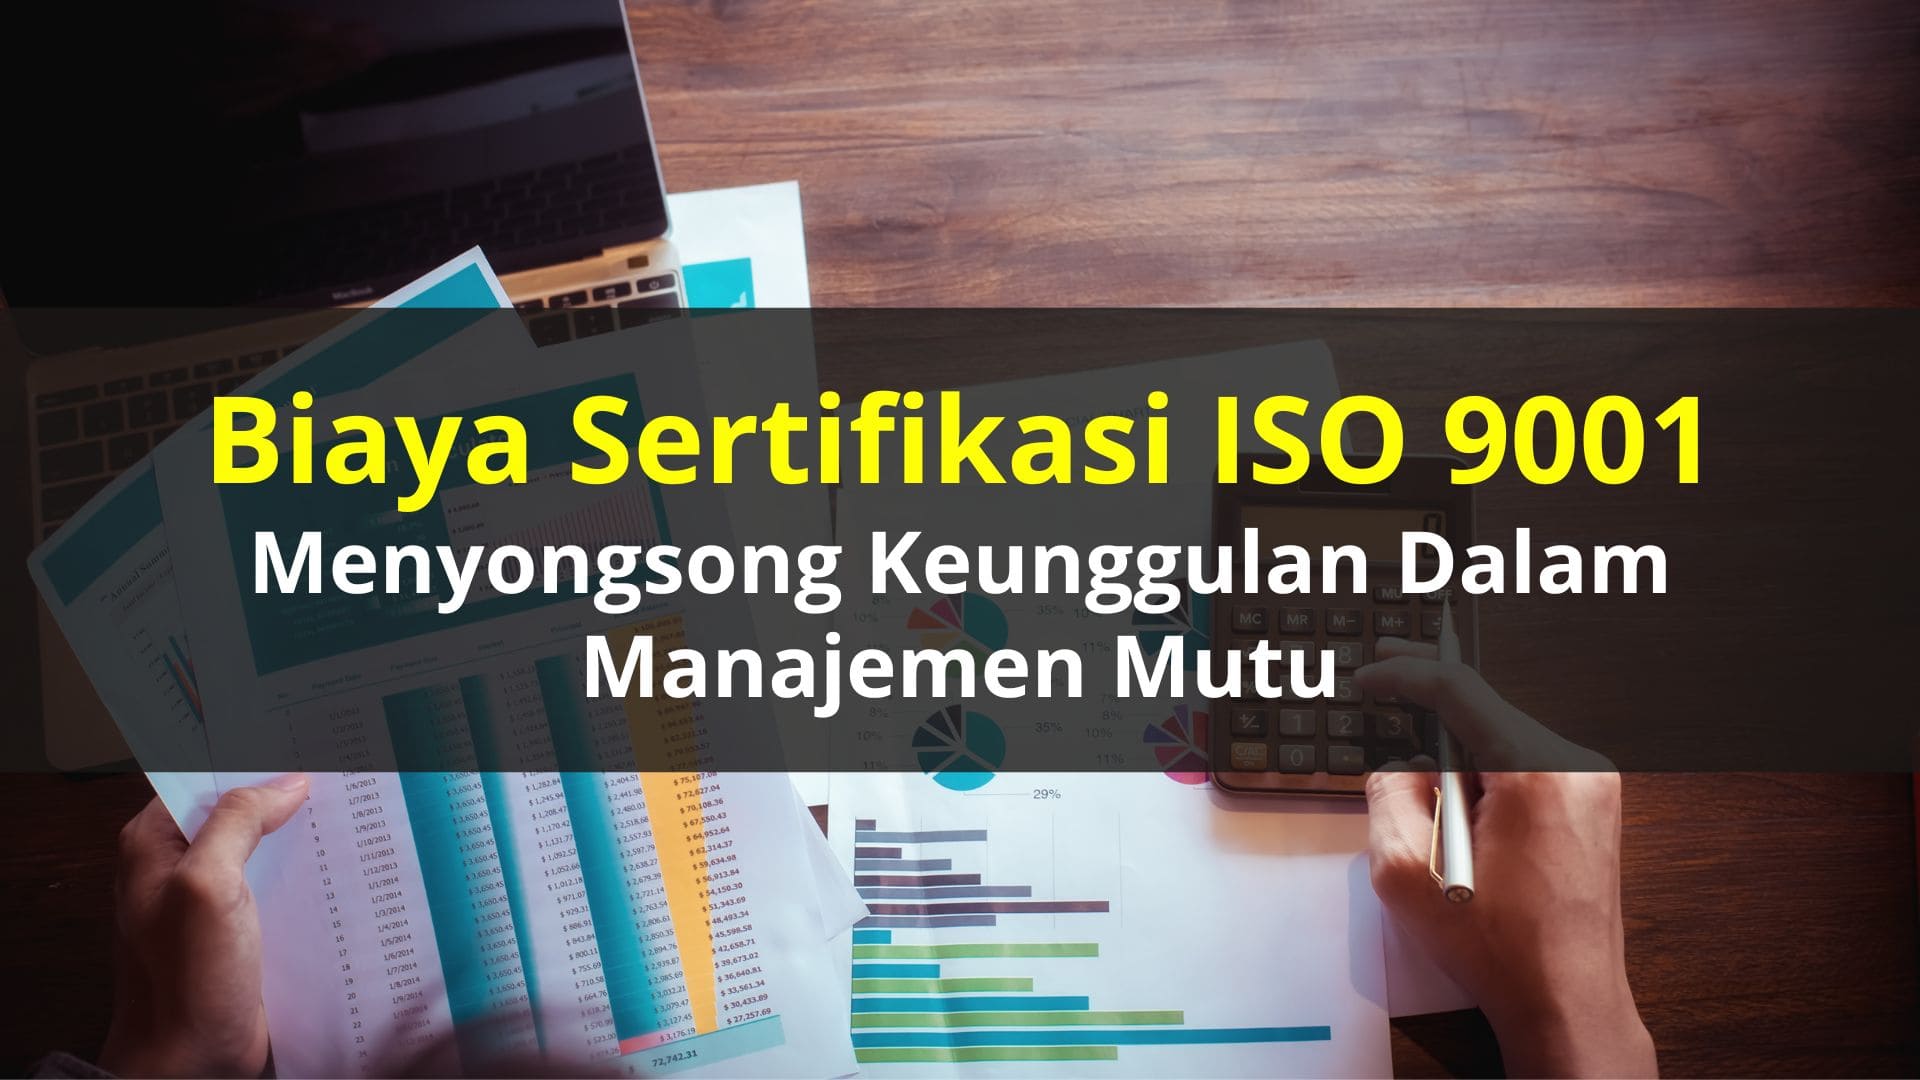 Biaya Sertifikasi ISO 9001 Menyongsong Keunggulan dalam Manajemen Mutu